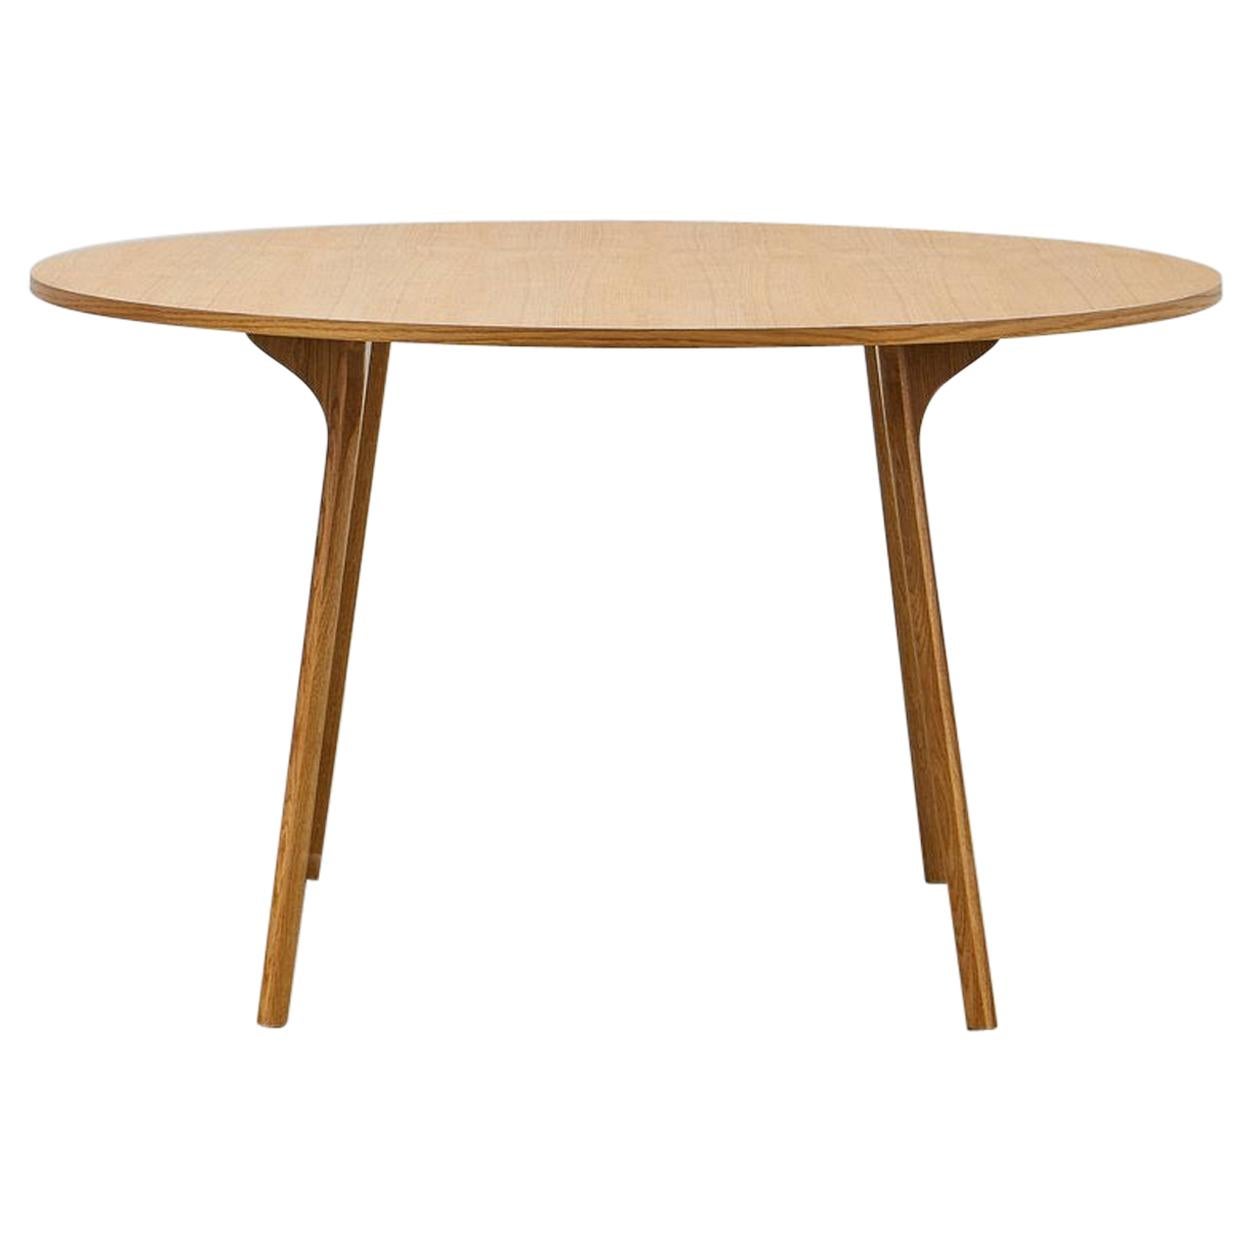 Table circulaire PH, pieds en bois de chêne naturel, plaque de table en placage et bordure